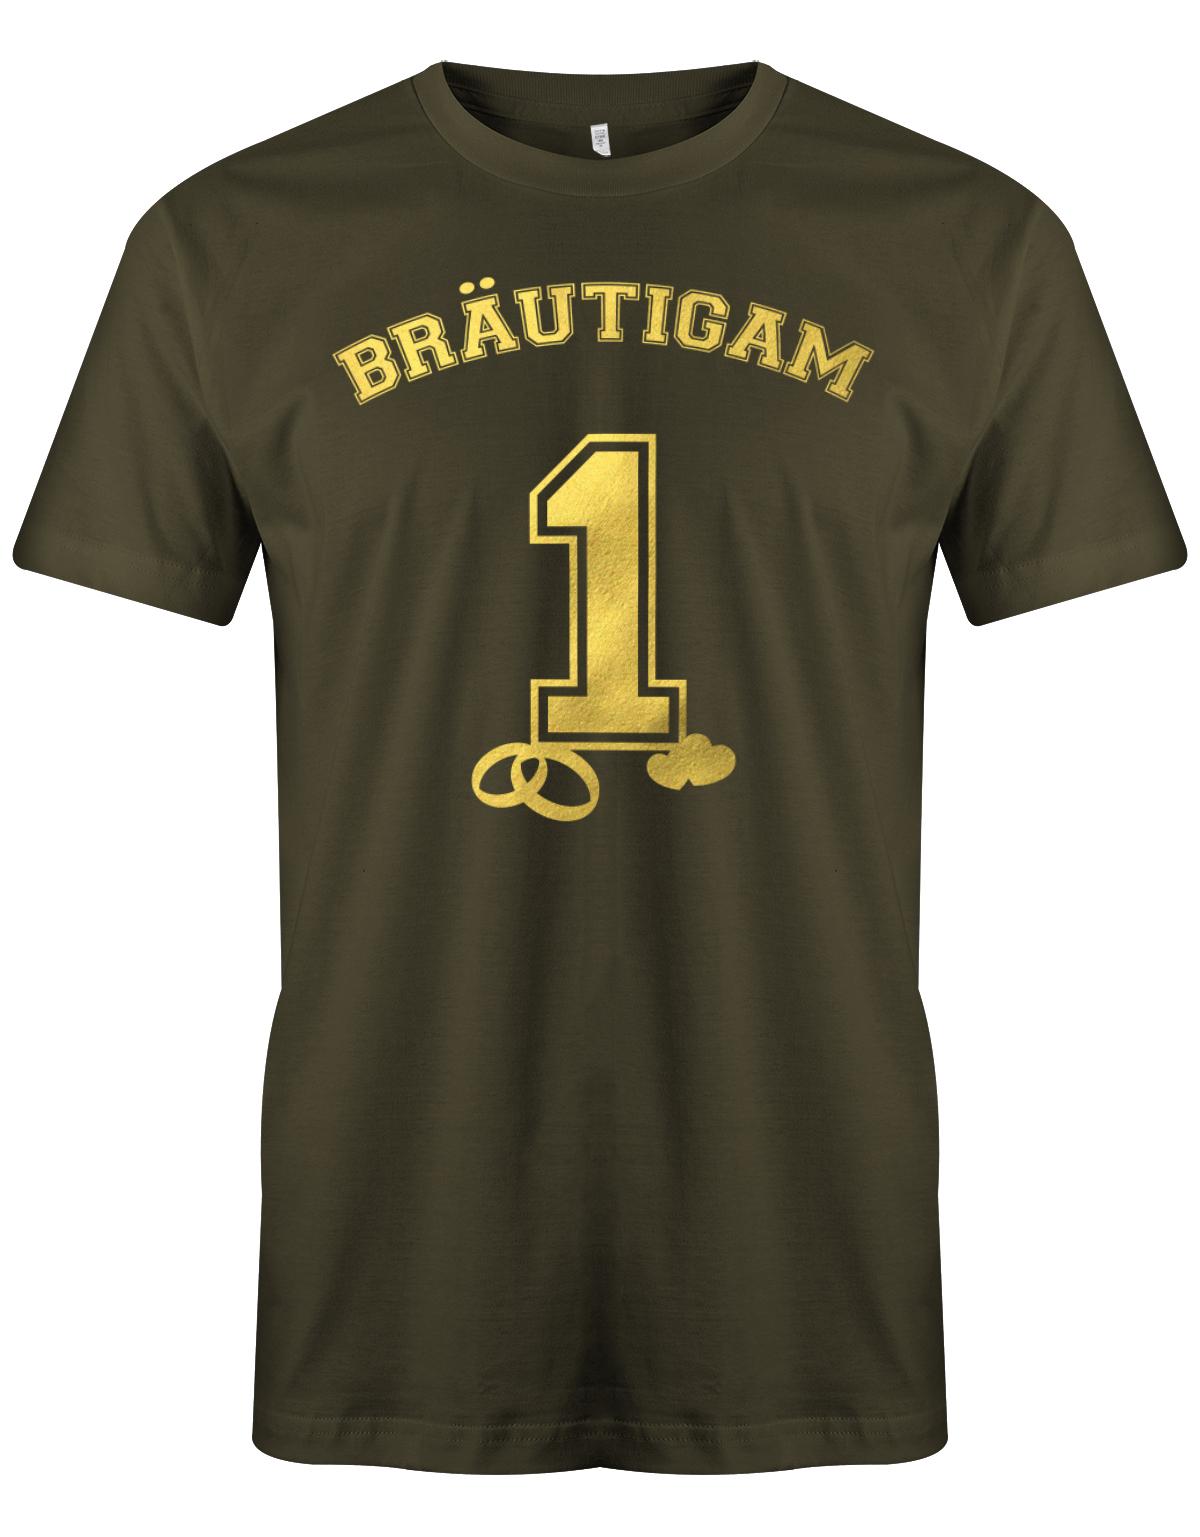 Br-utigam-1-Jga-Shirt-Herren-Army